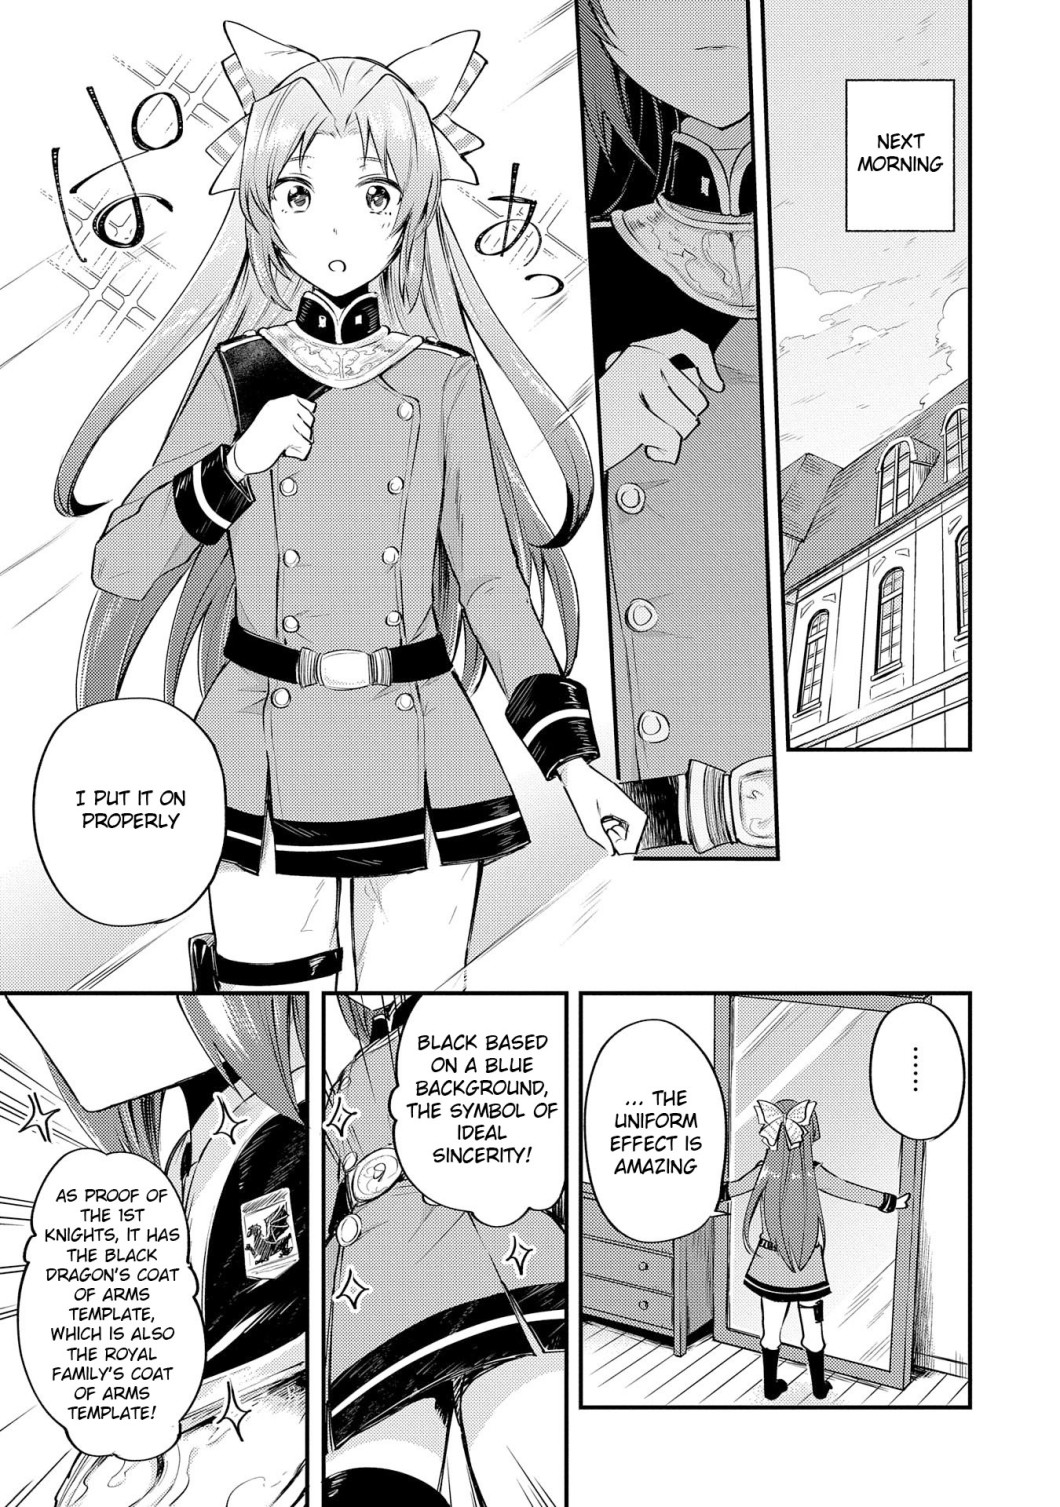 fia-manga-chapter-3-page-010.jpg